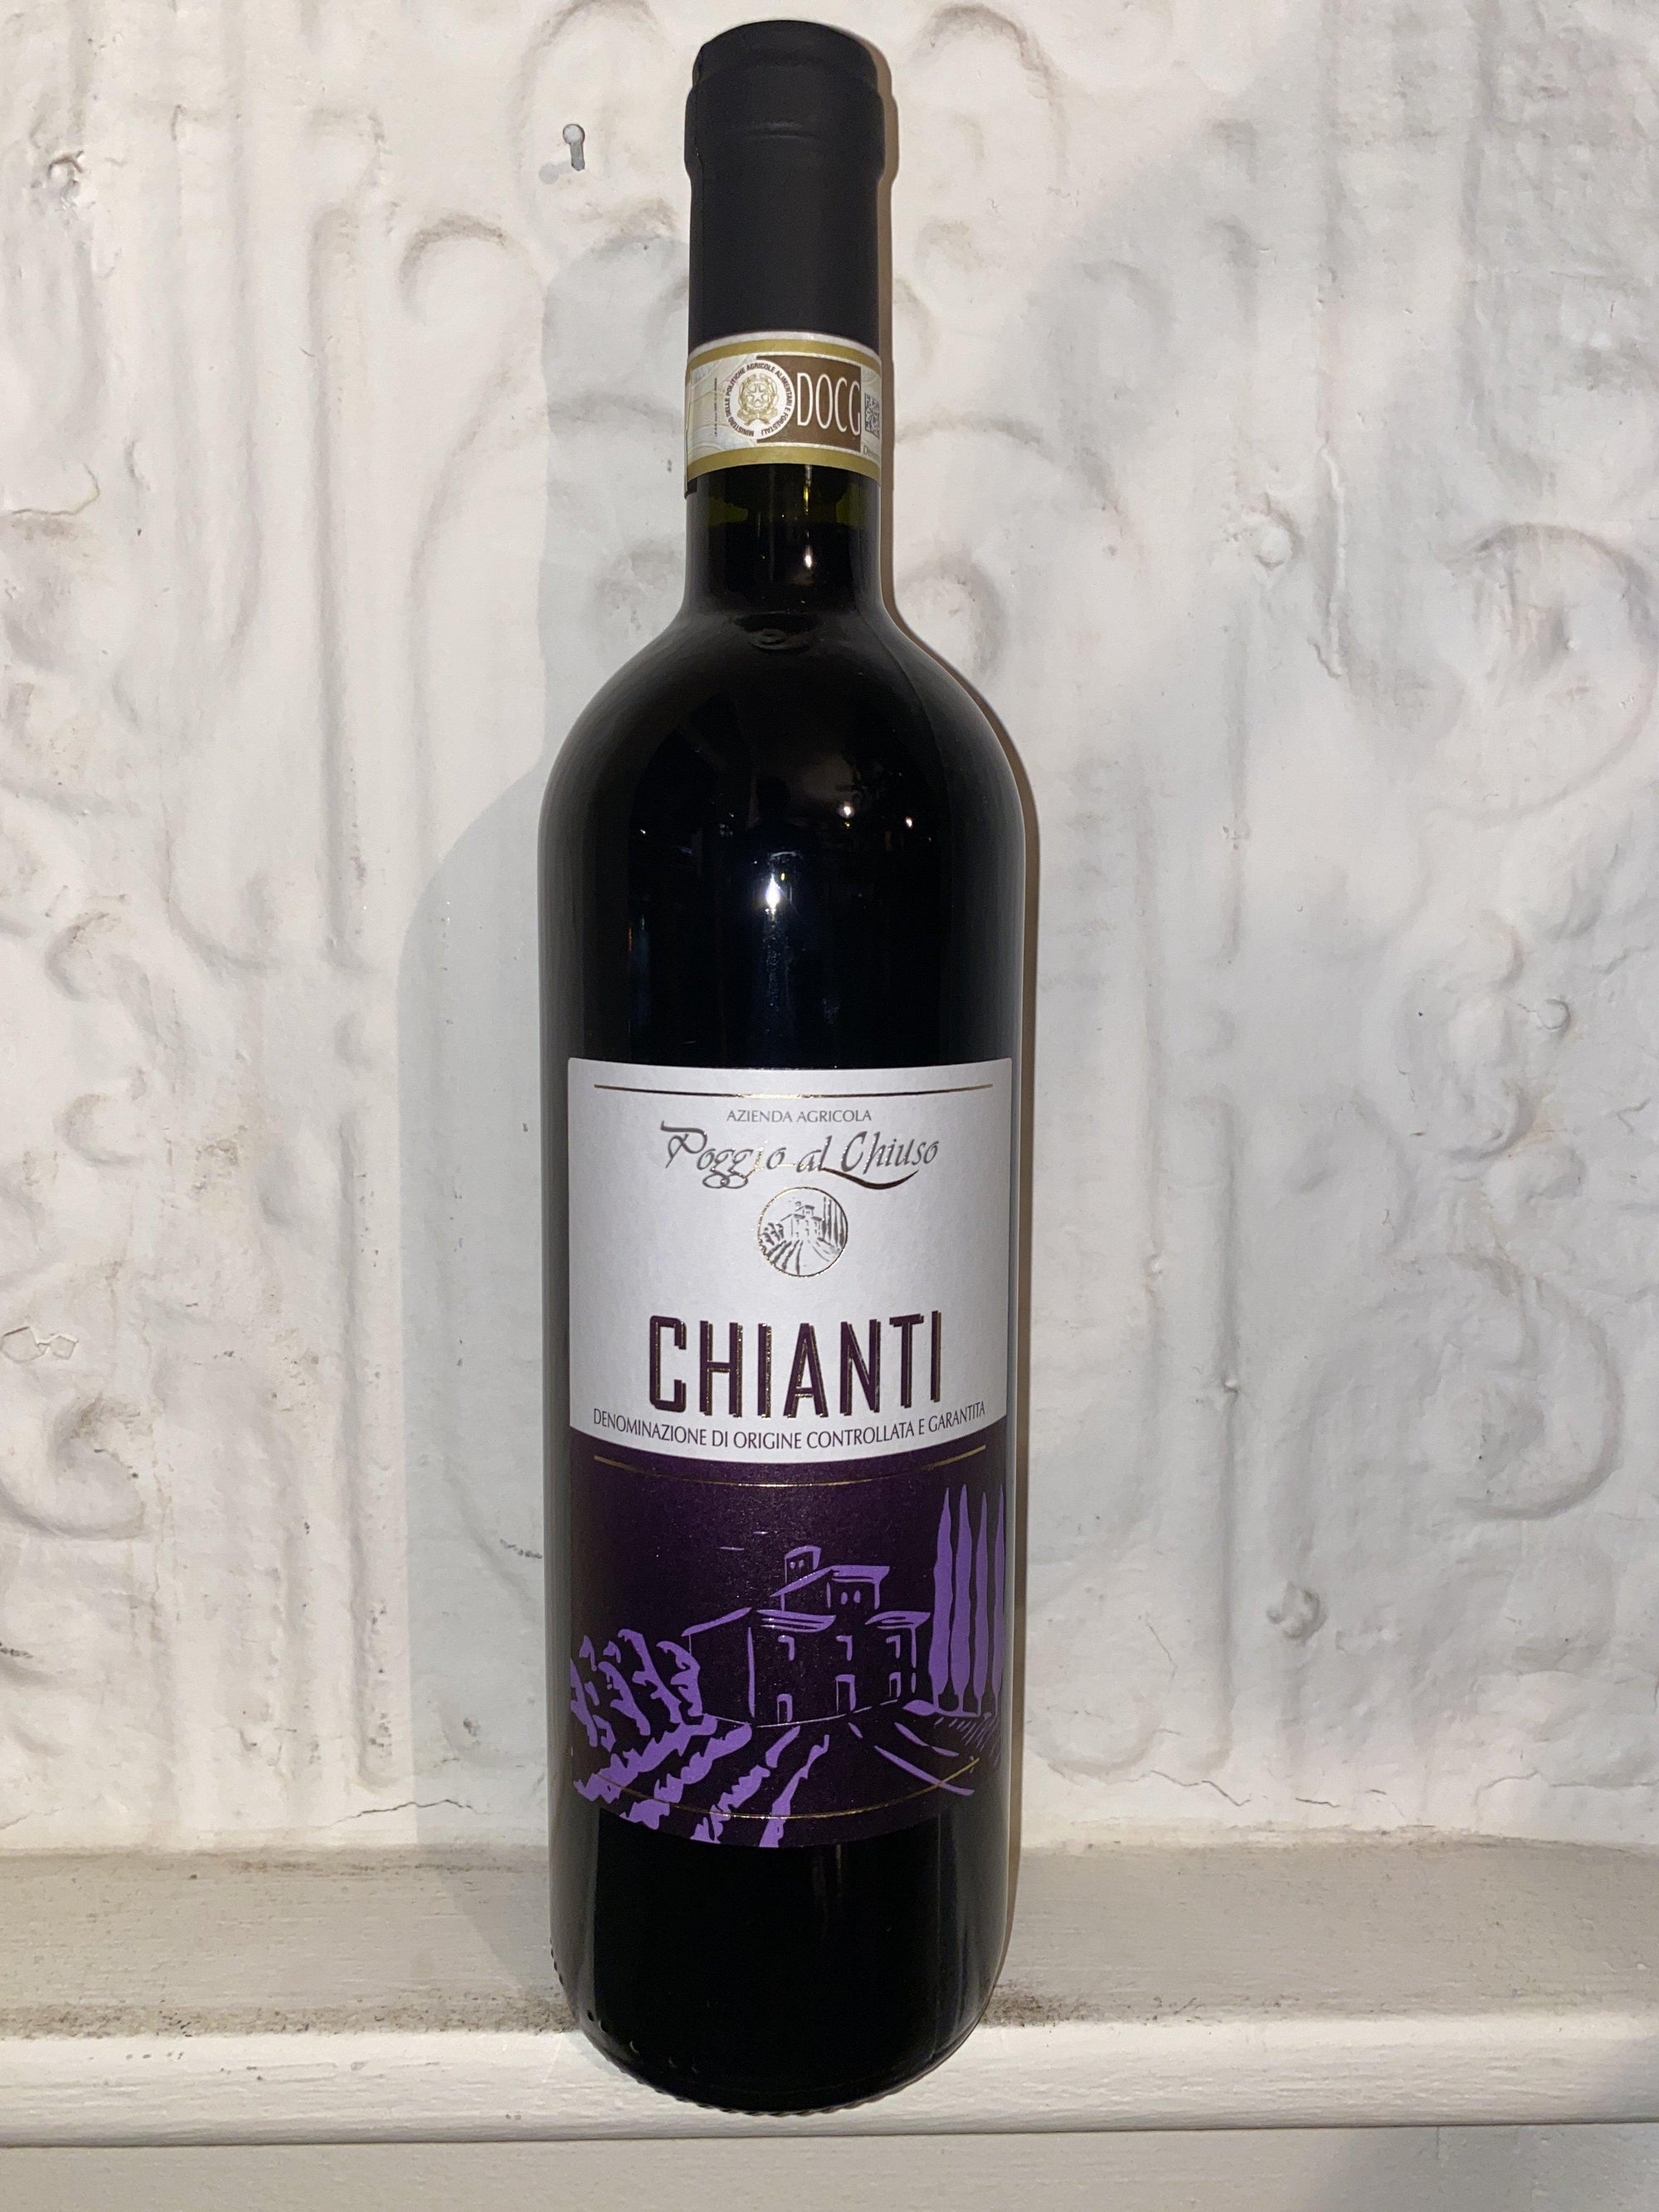 Chianti, Poggio al Chiuso 2017 (Tuscany, Italy)-Wine-Bibber & Bell